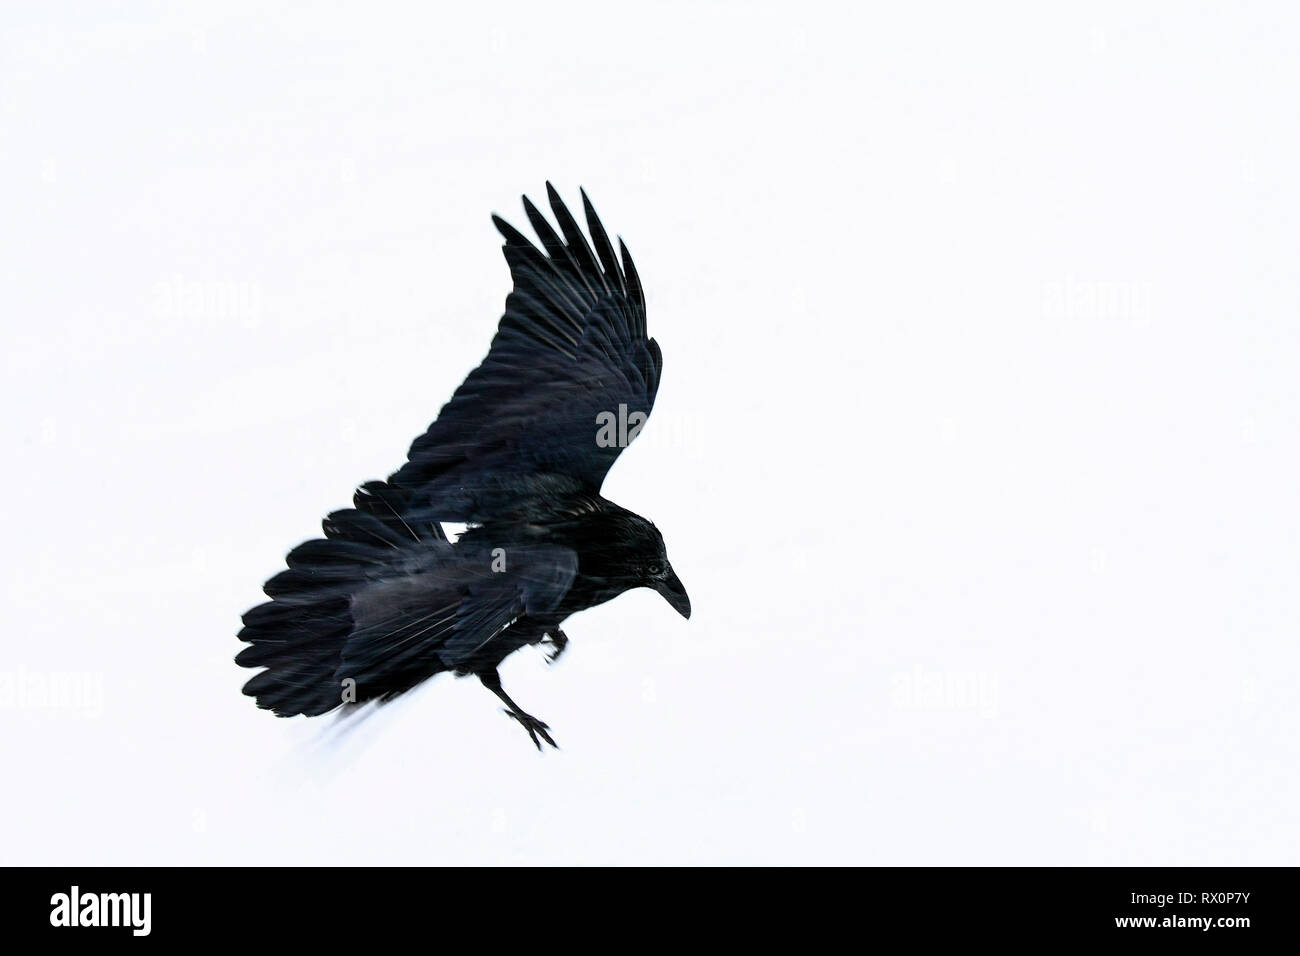 40,524.02030 -- questo bel big black bird battenti in tempesta di neve è un corvo imperiale (Corvus corax, Corvidae - vicino a 20' lungo, becco alla punta della coda), Jasper Foto Stock